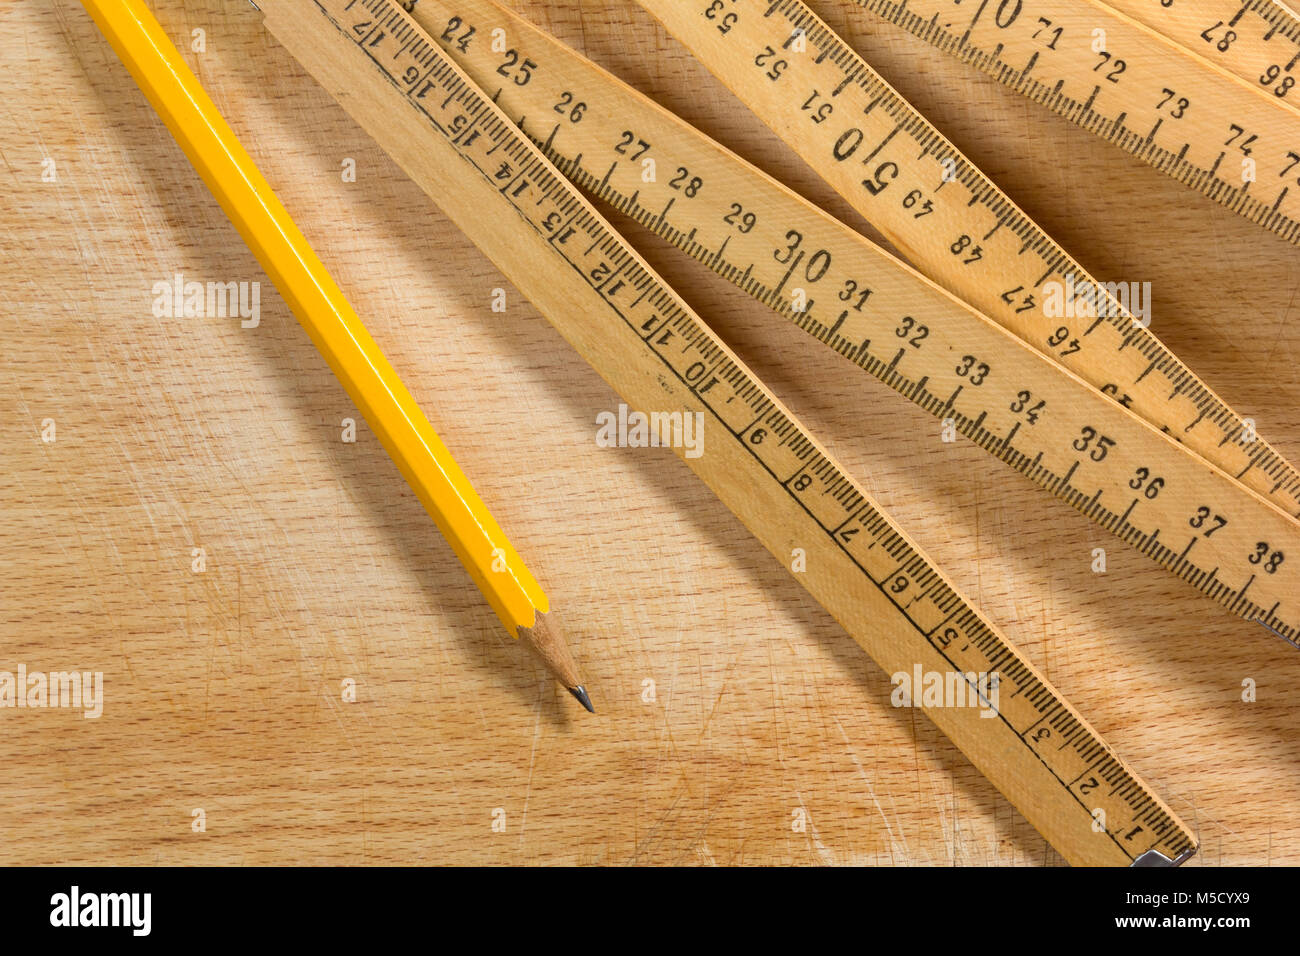 Ein Messstab und einen Bleistift auf einem alten Holztisch Stockfoto